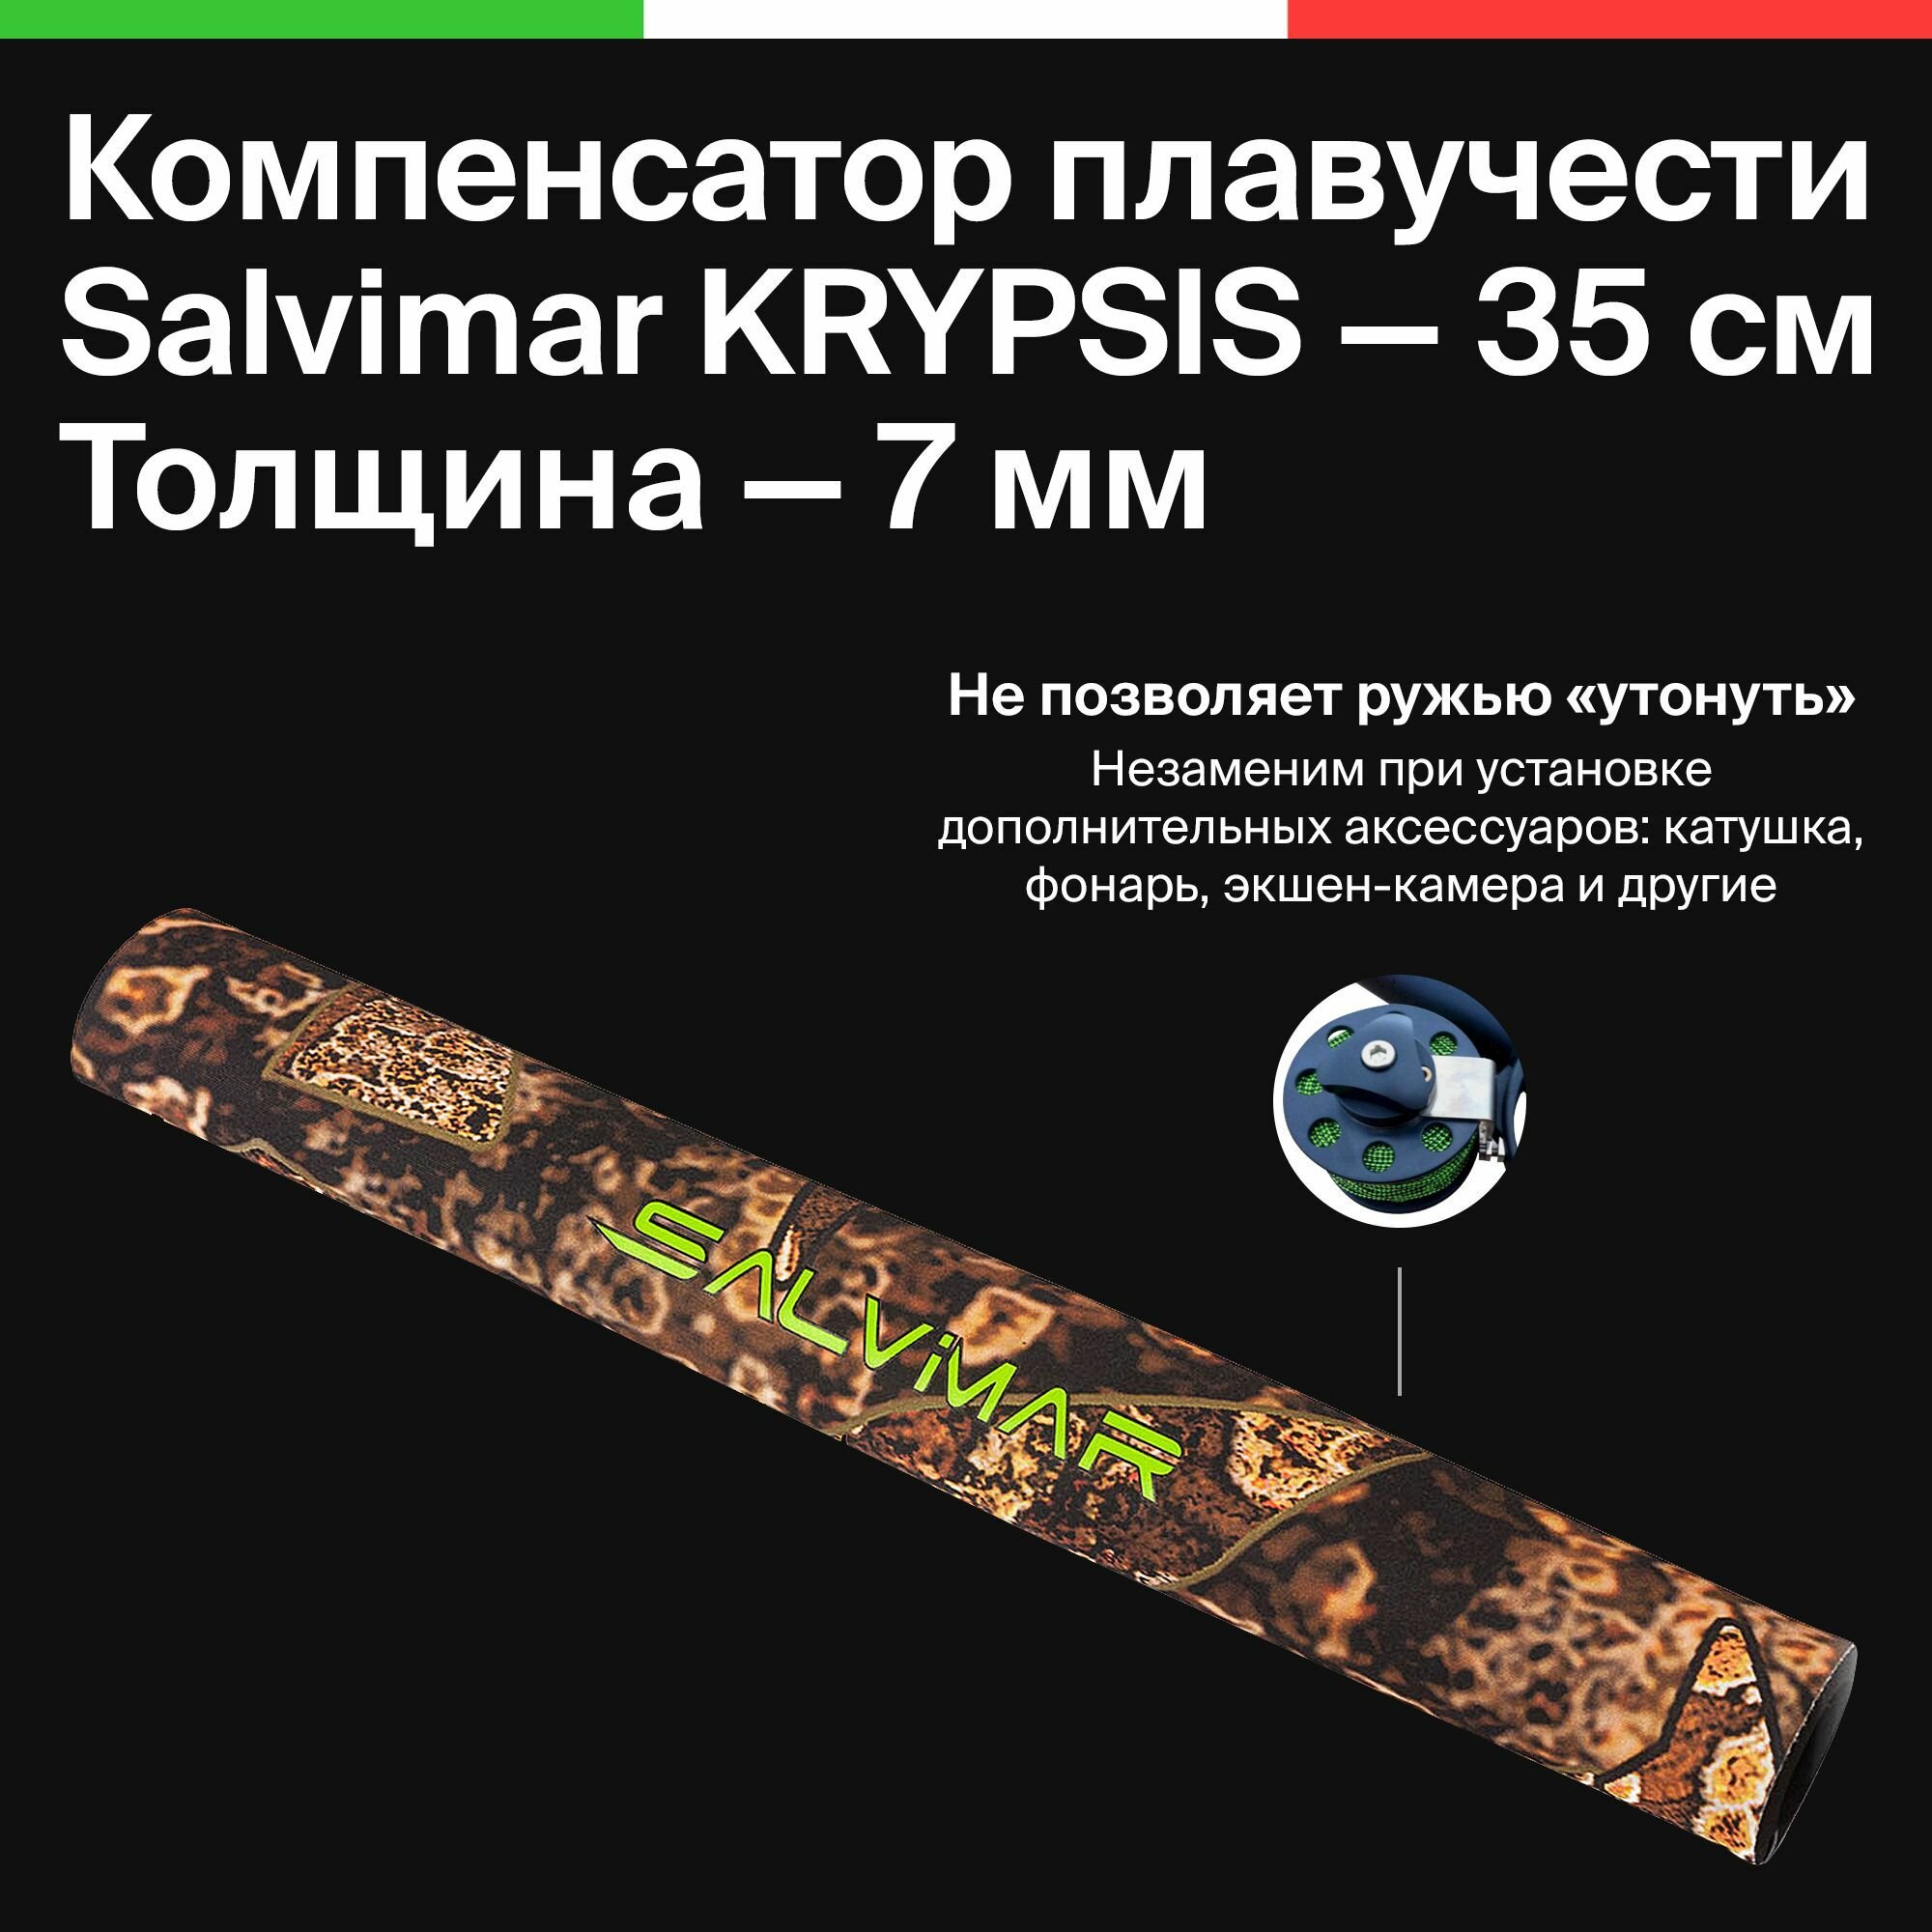 Компенсатор плавучести для пневматических подводных ружей Salvimar KRYPSIS, 7 мм, 35 см